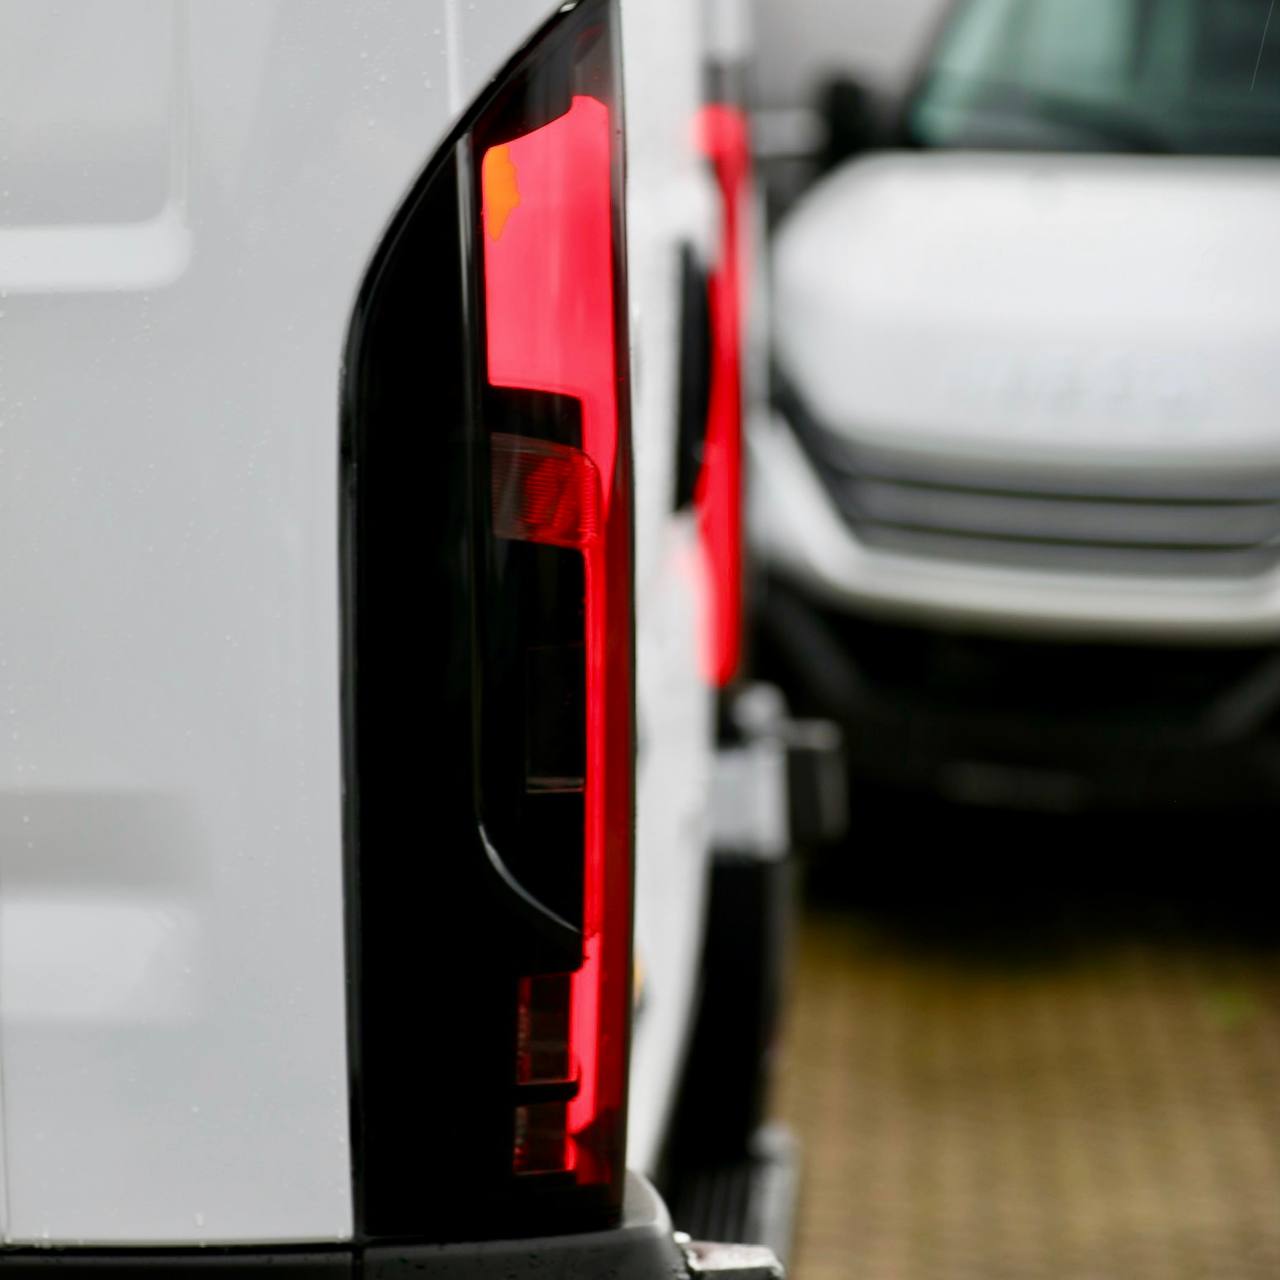 Peugeot Boxer full LED-achterlichtencluster, achterlicht, achterlichtunit, vervangend rooklicht, Van-X, NIEUW